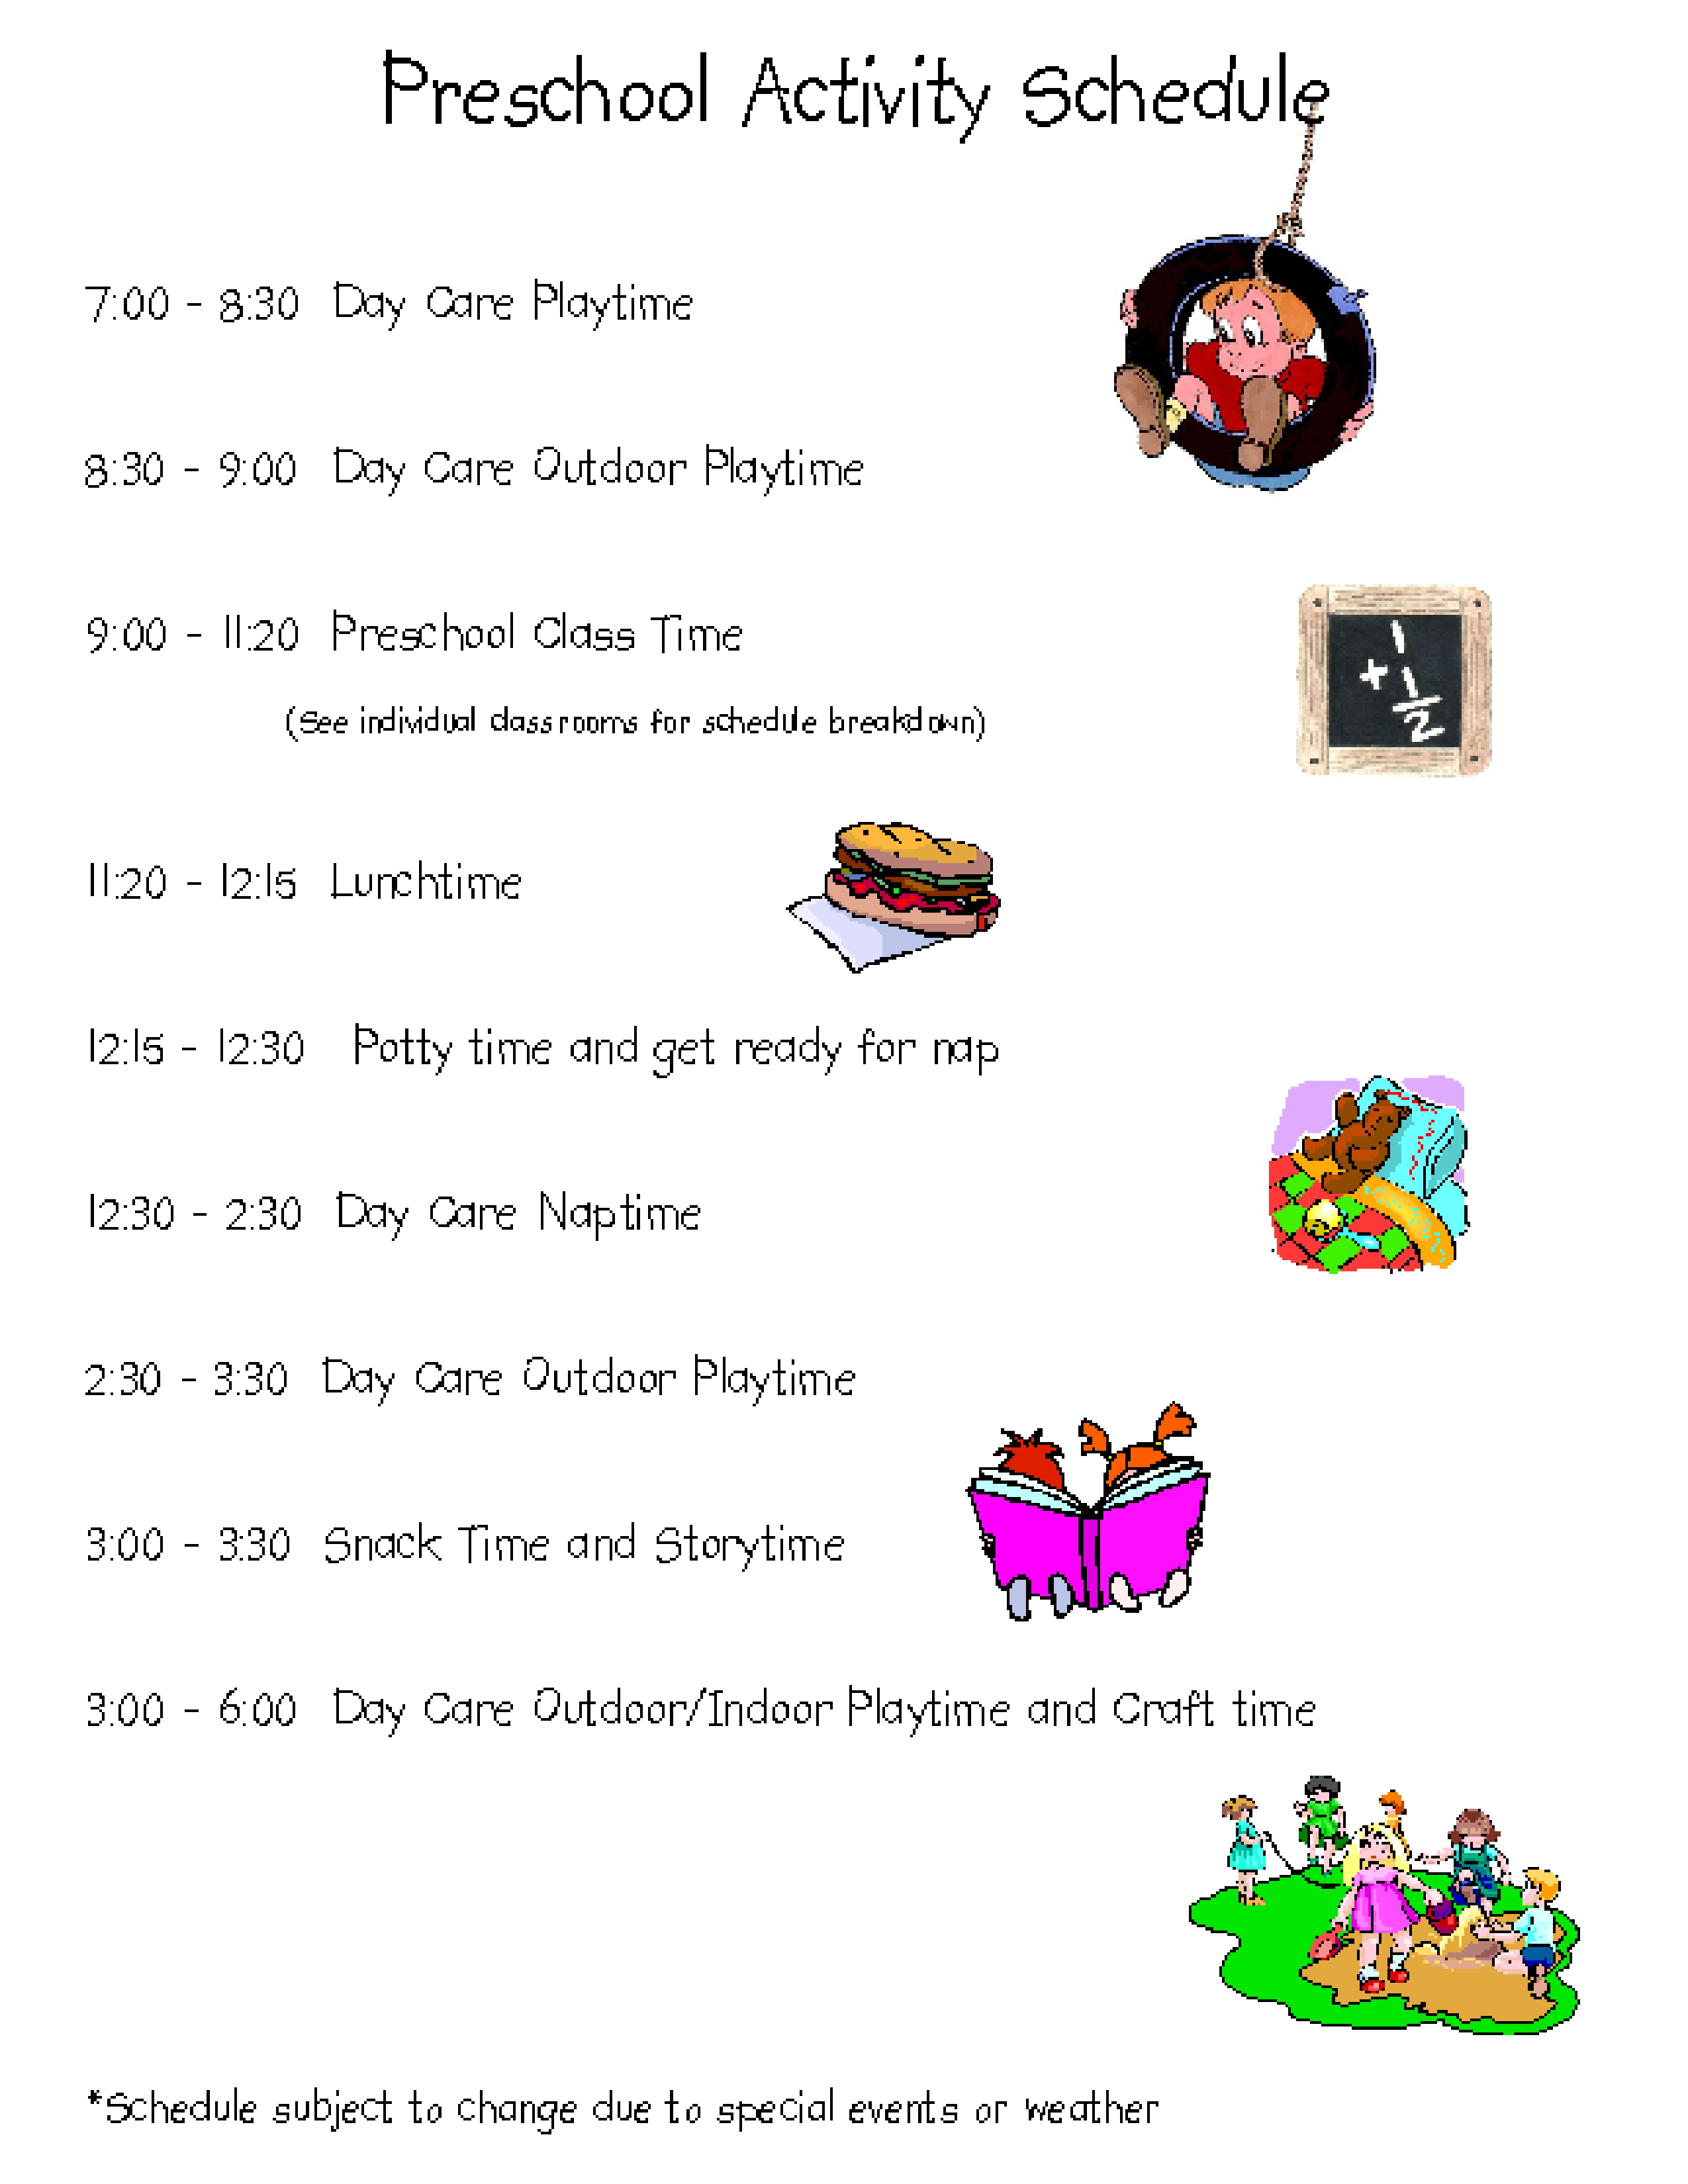 Preschool Activity Schedule main image